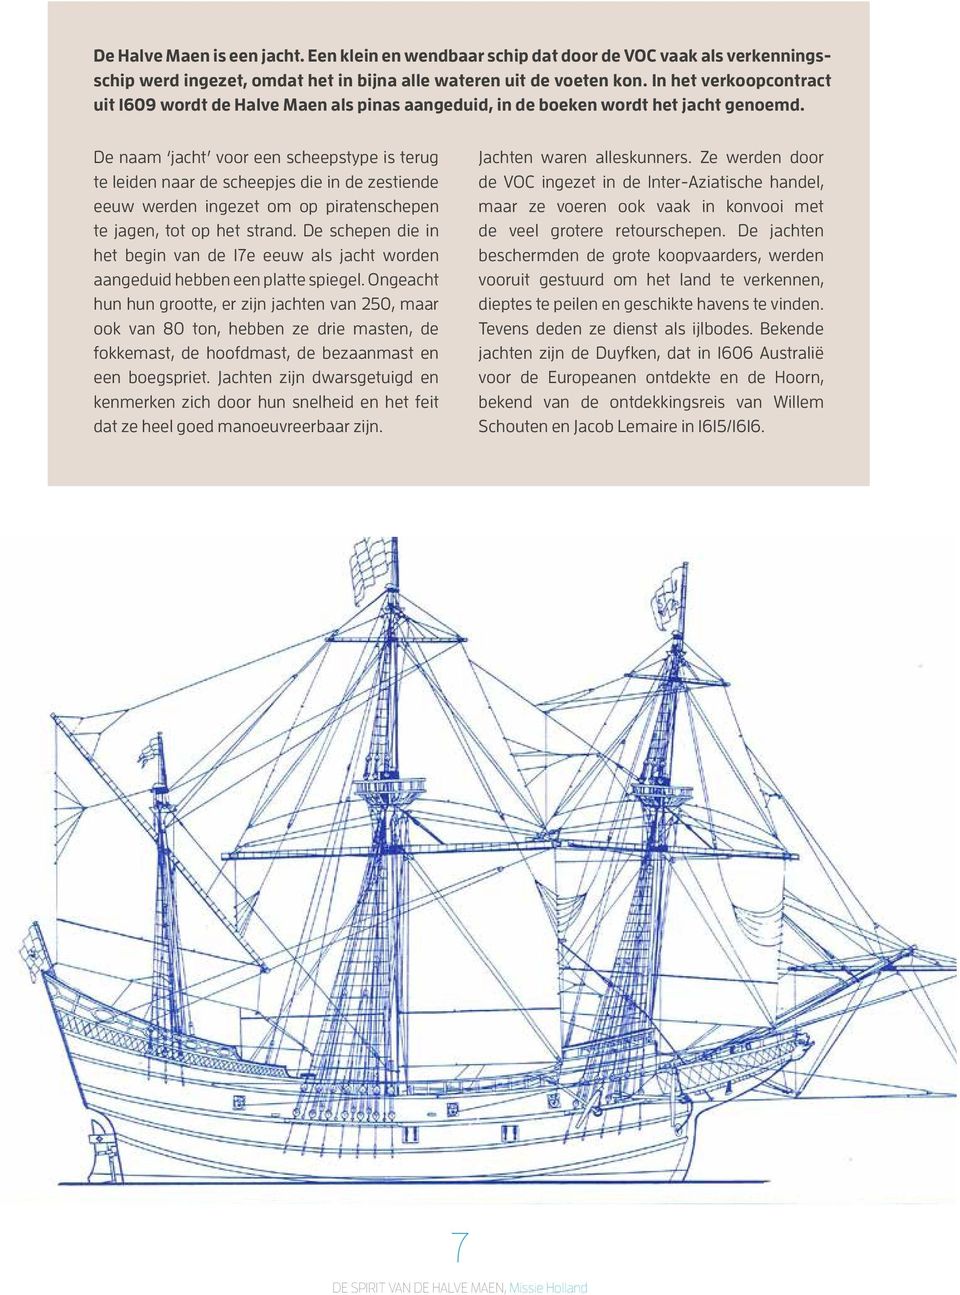 De naam jacht voor een scheepstype is terug te leiden naar de scheepjes die in de zestiende eeuw werden ingezet om op piratenschepen te jagen, tot op het strand.